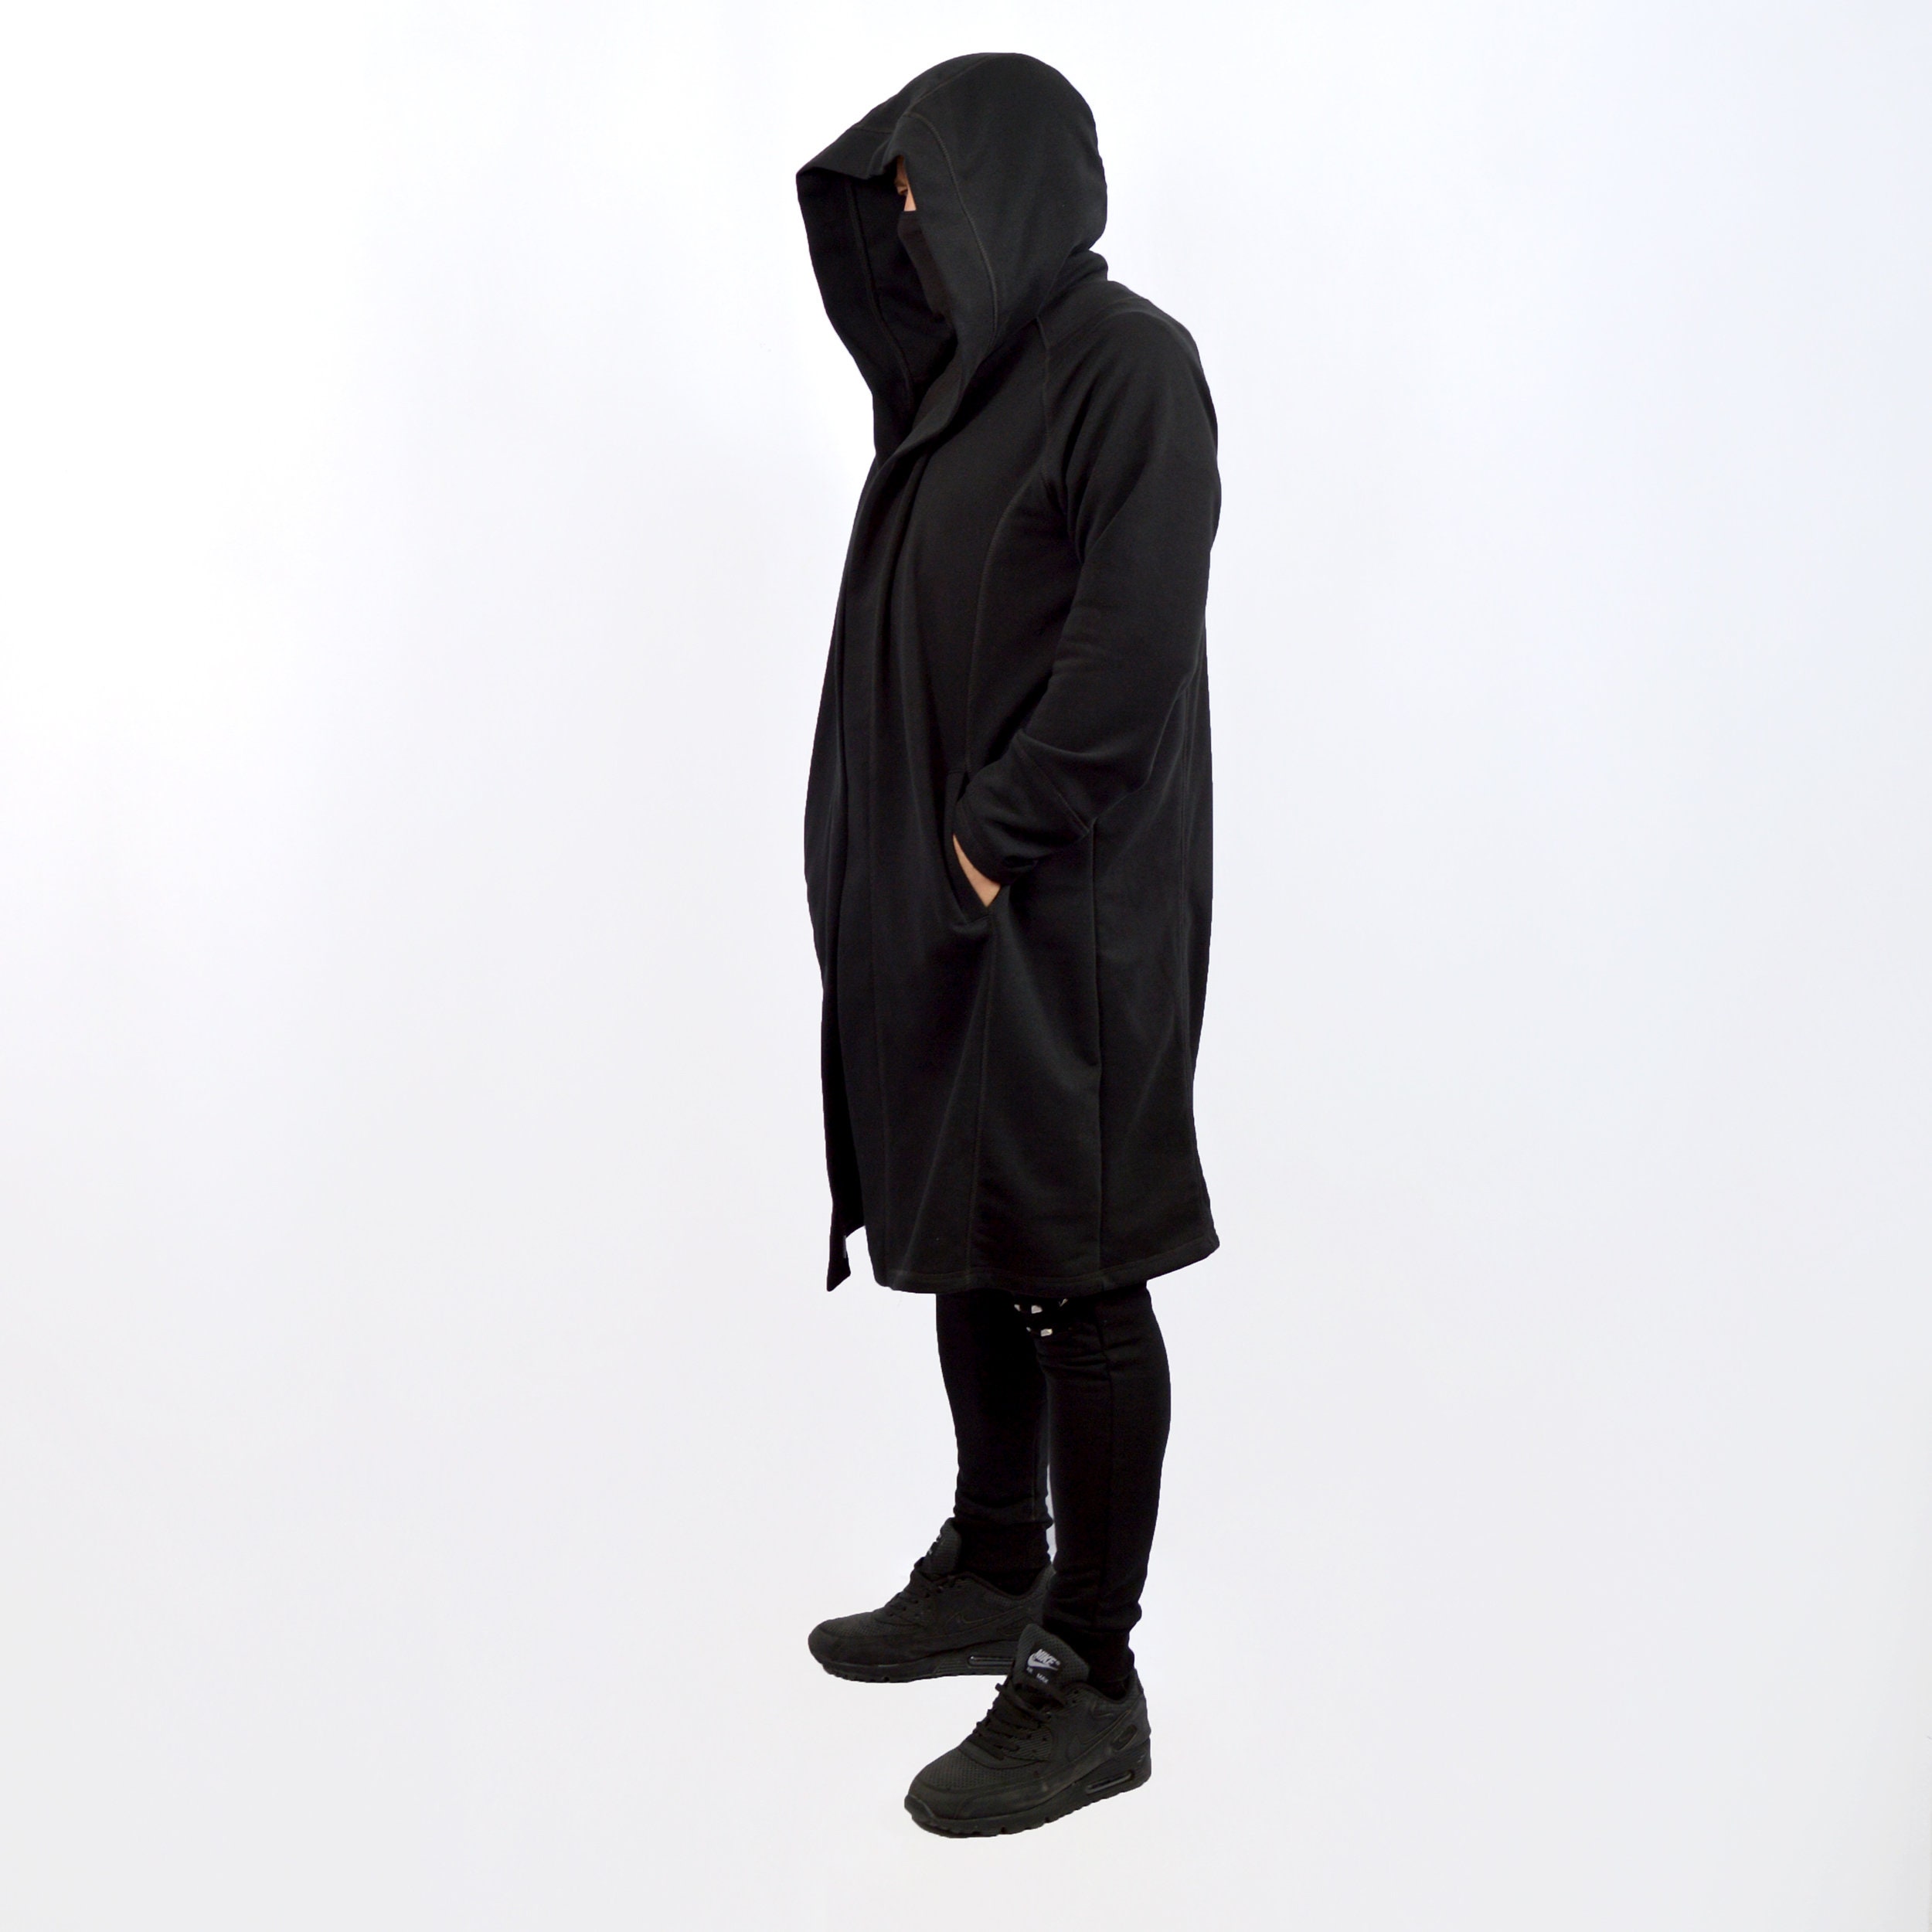 Unisex cardigan Cardigan Hooded Coat Cloak with Hood | Etsy